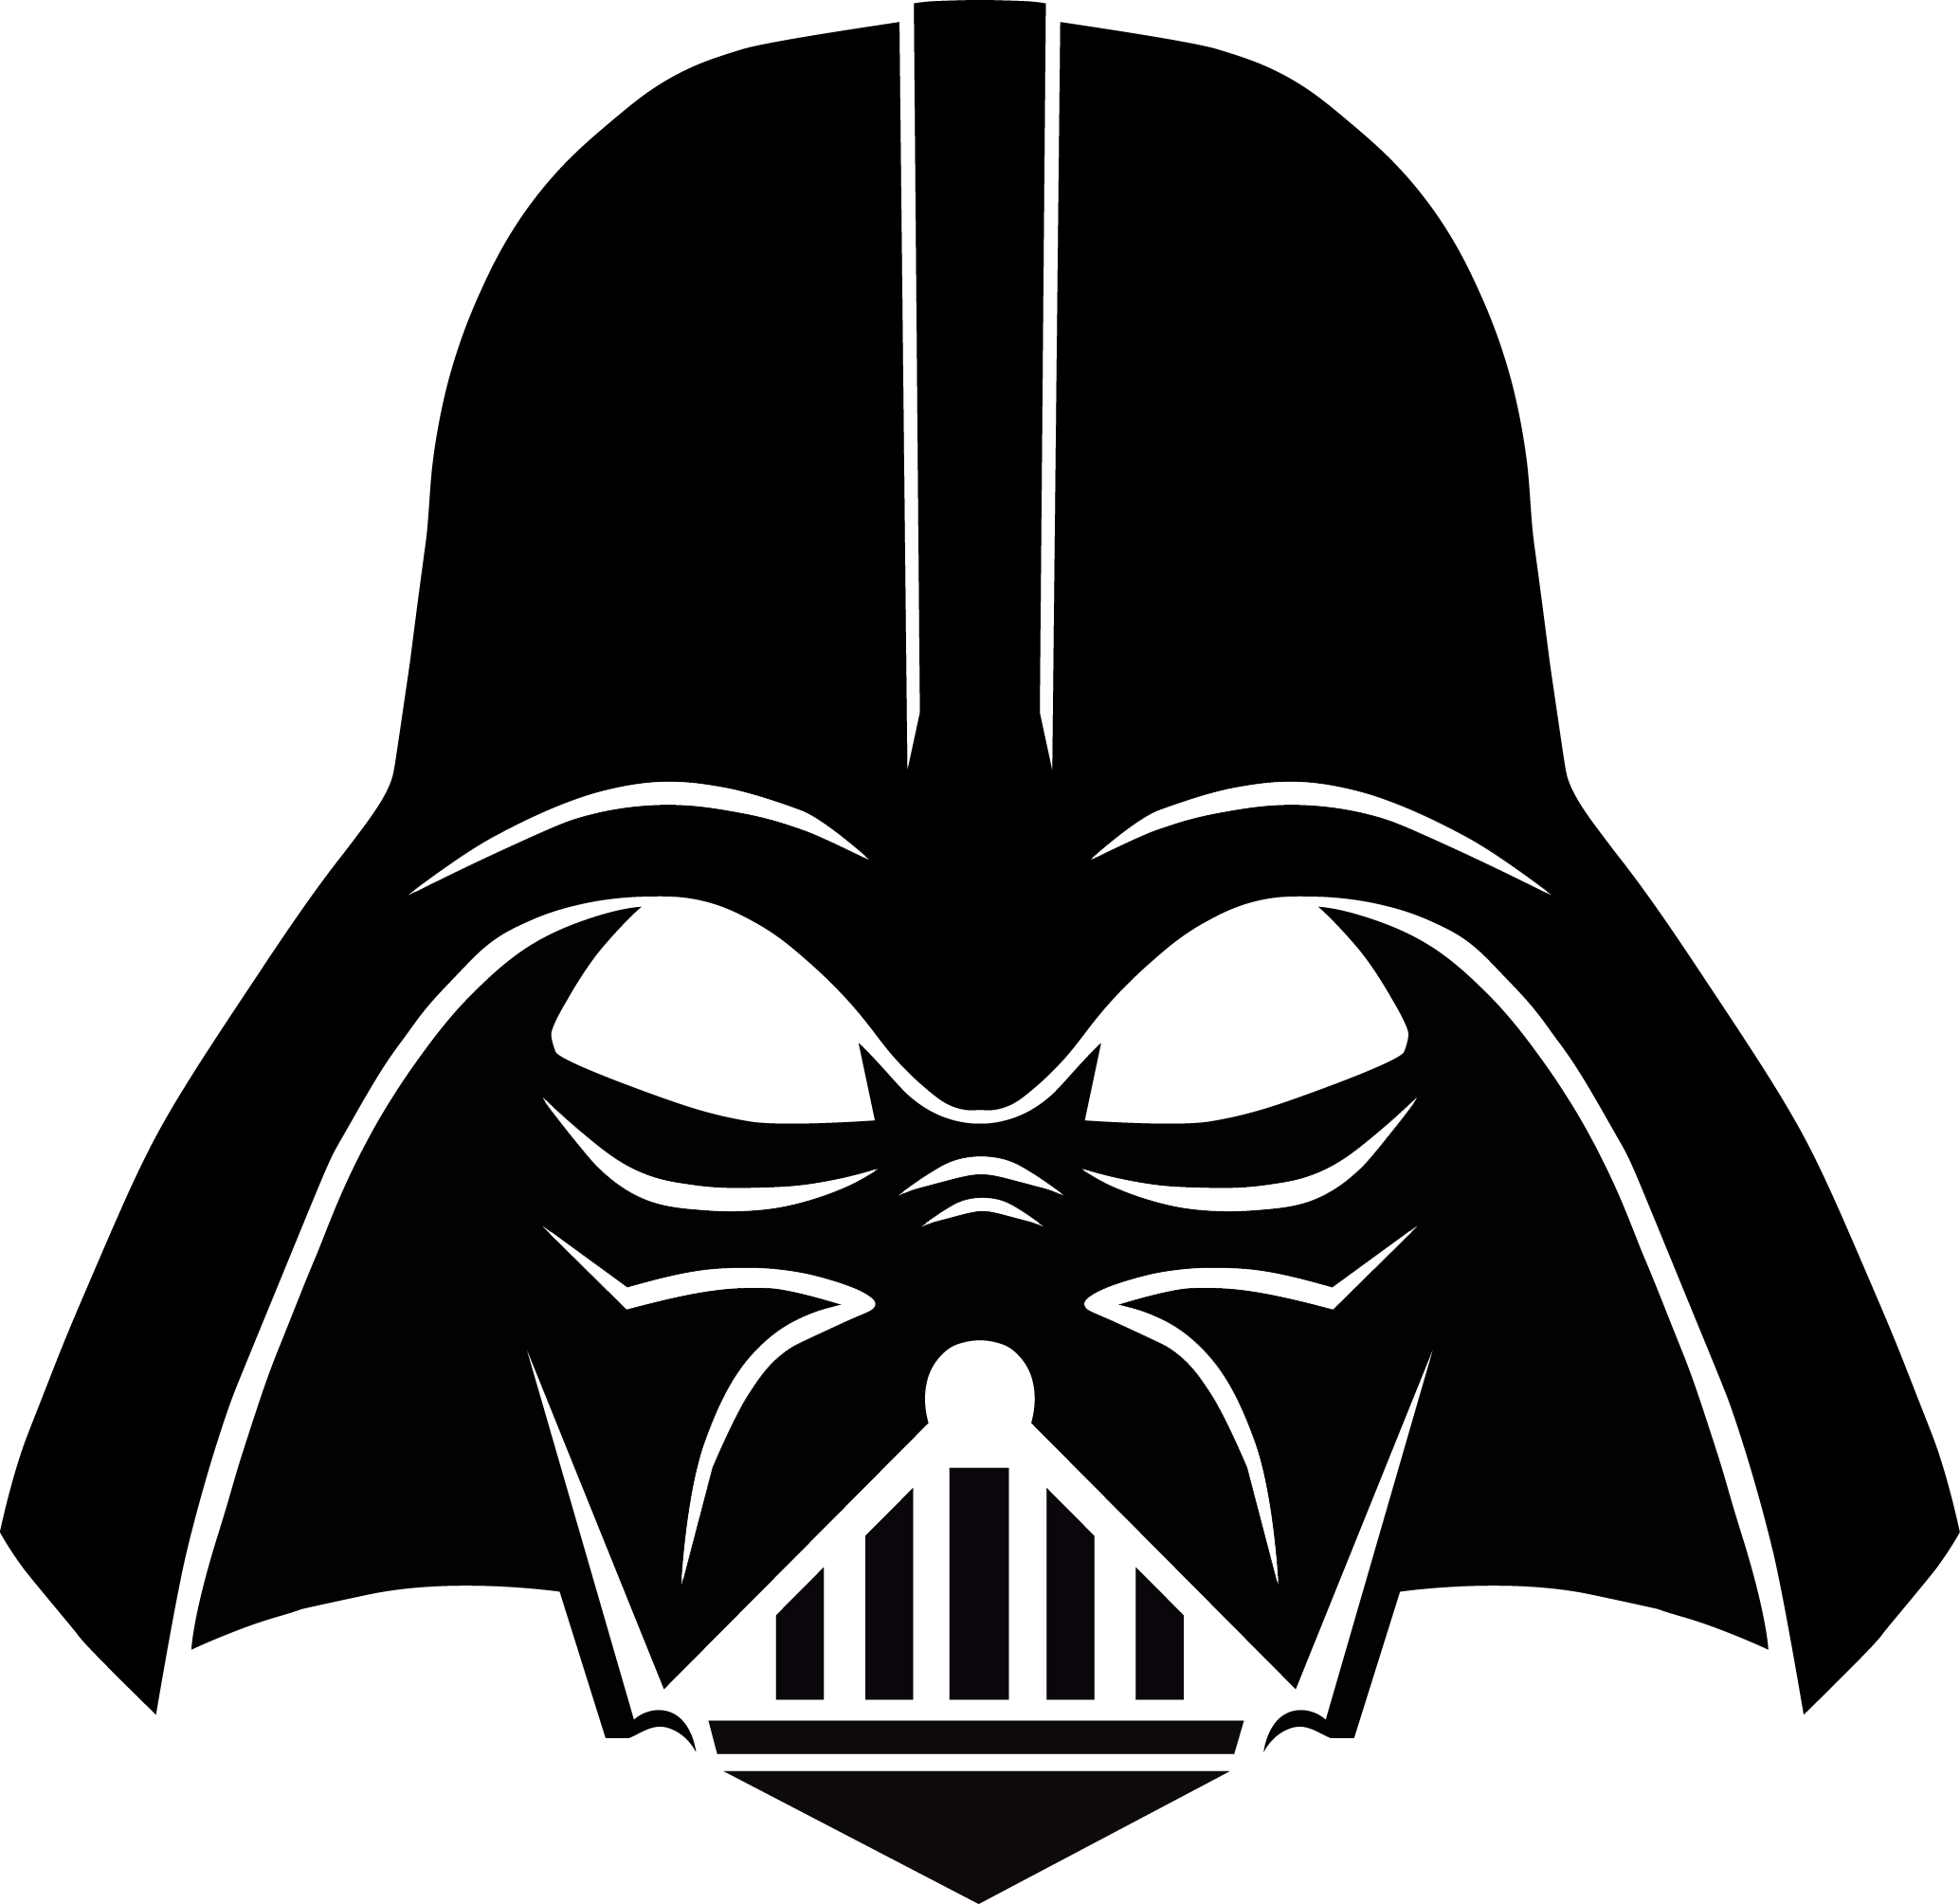 Darth Vader Mask PNG Transparent Image